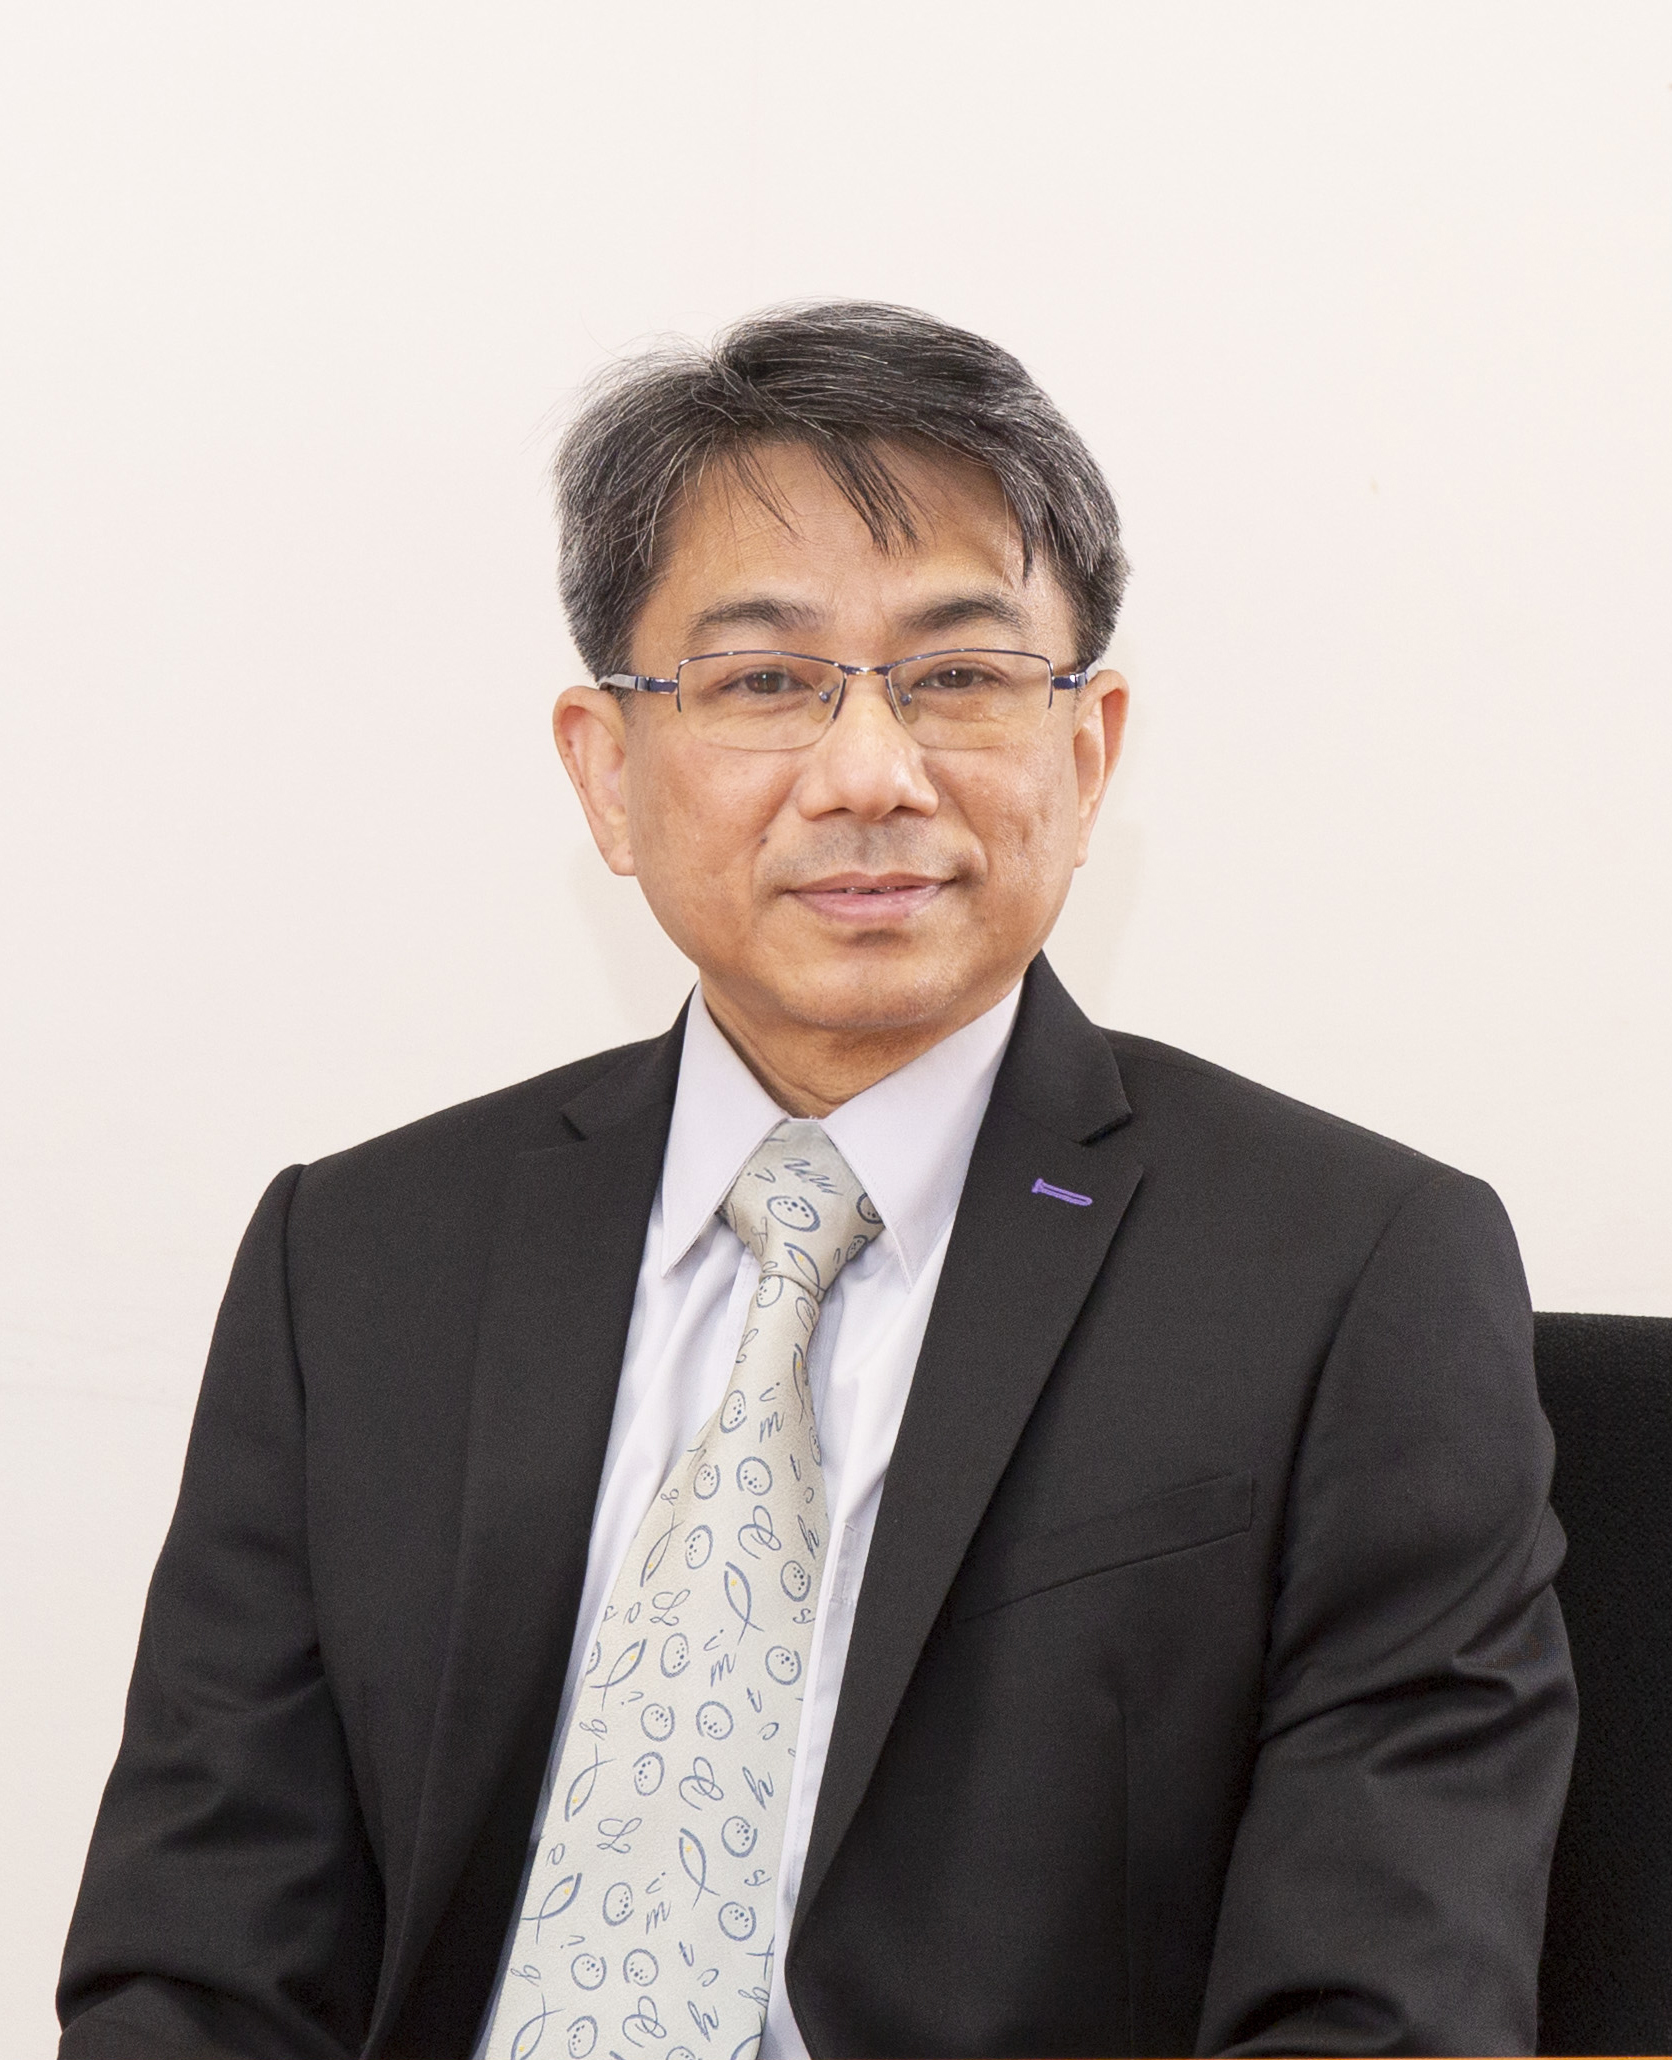 Prof. Siu-Ming Yiu